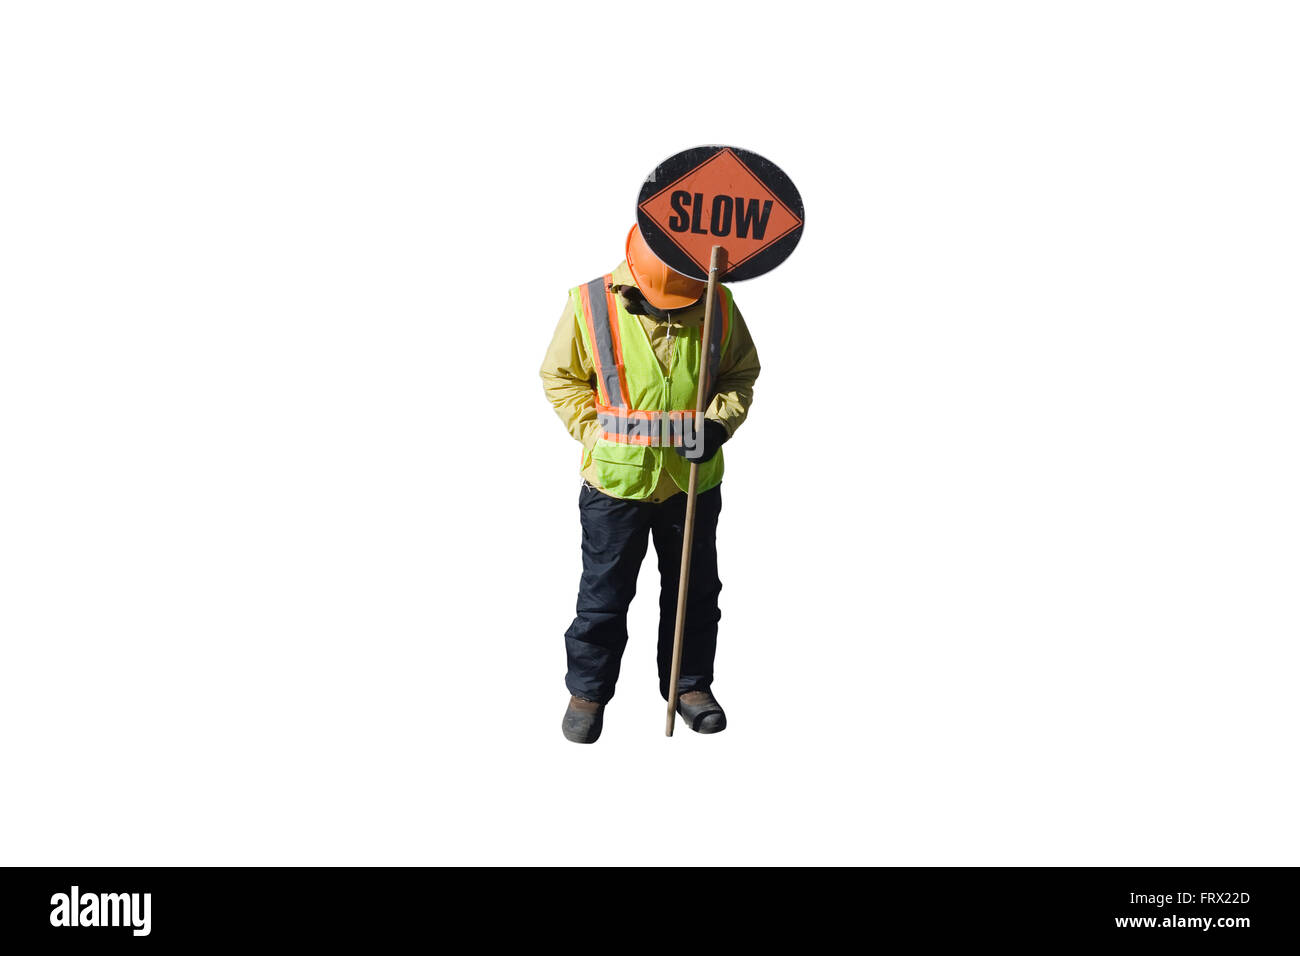 Cut Out. Travailleur de la construction avec un casque et un gilet orange ronde est titulaire d'un signe sur un poteau avec lenteur imprimé sur elle Banque D'Images